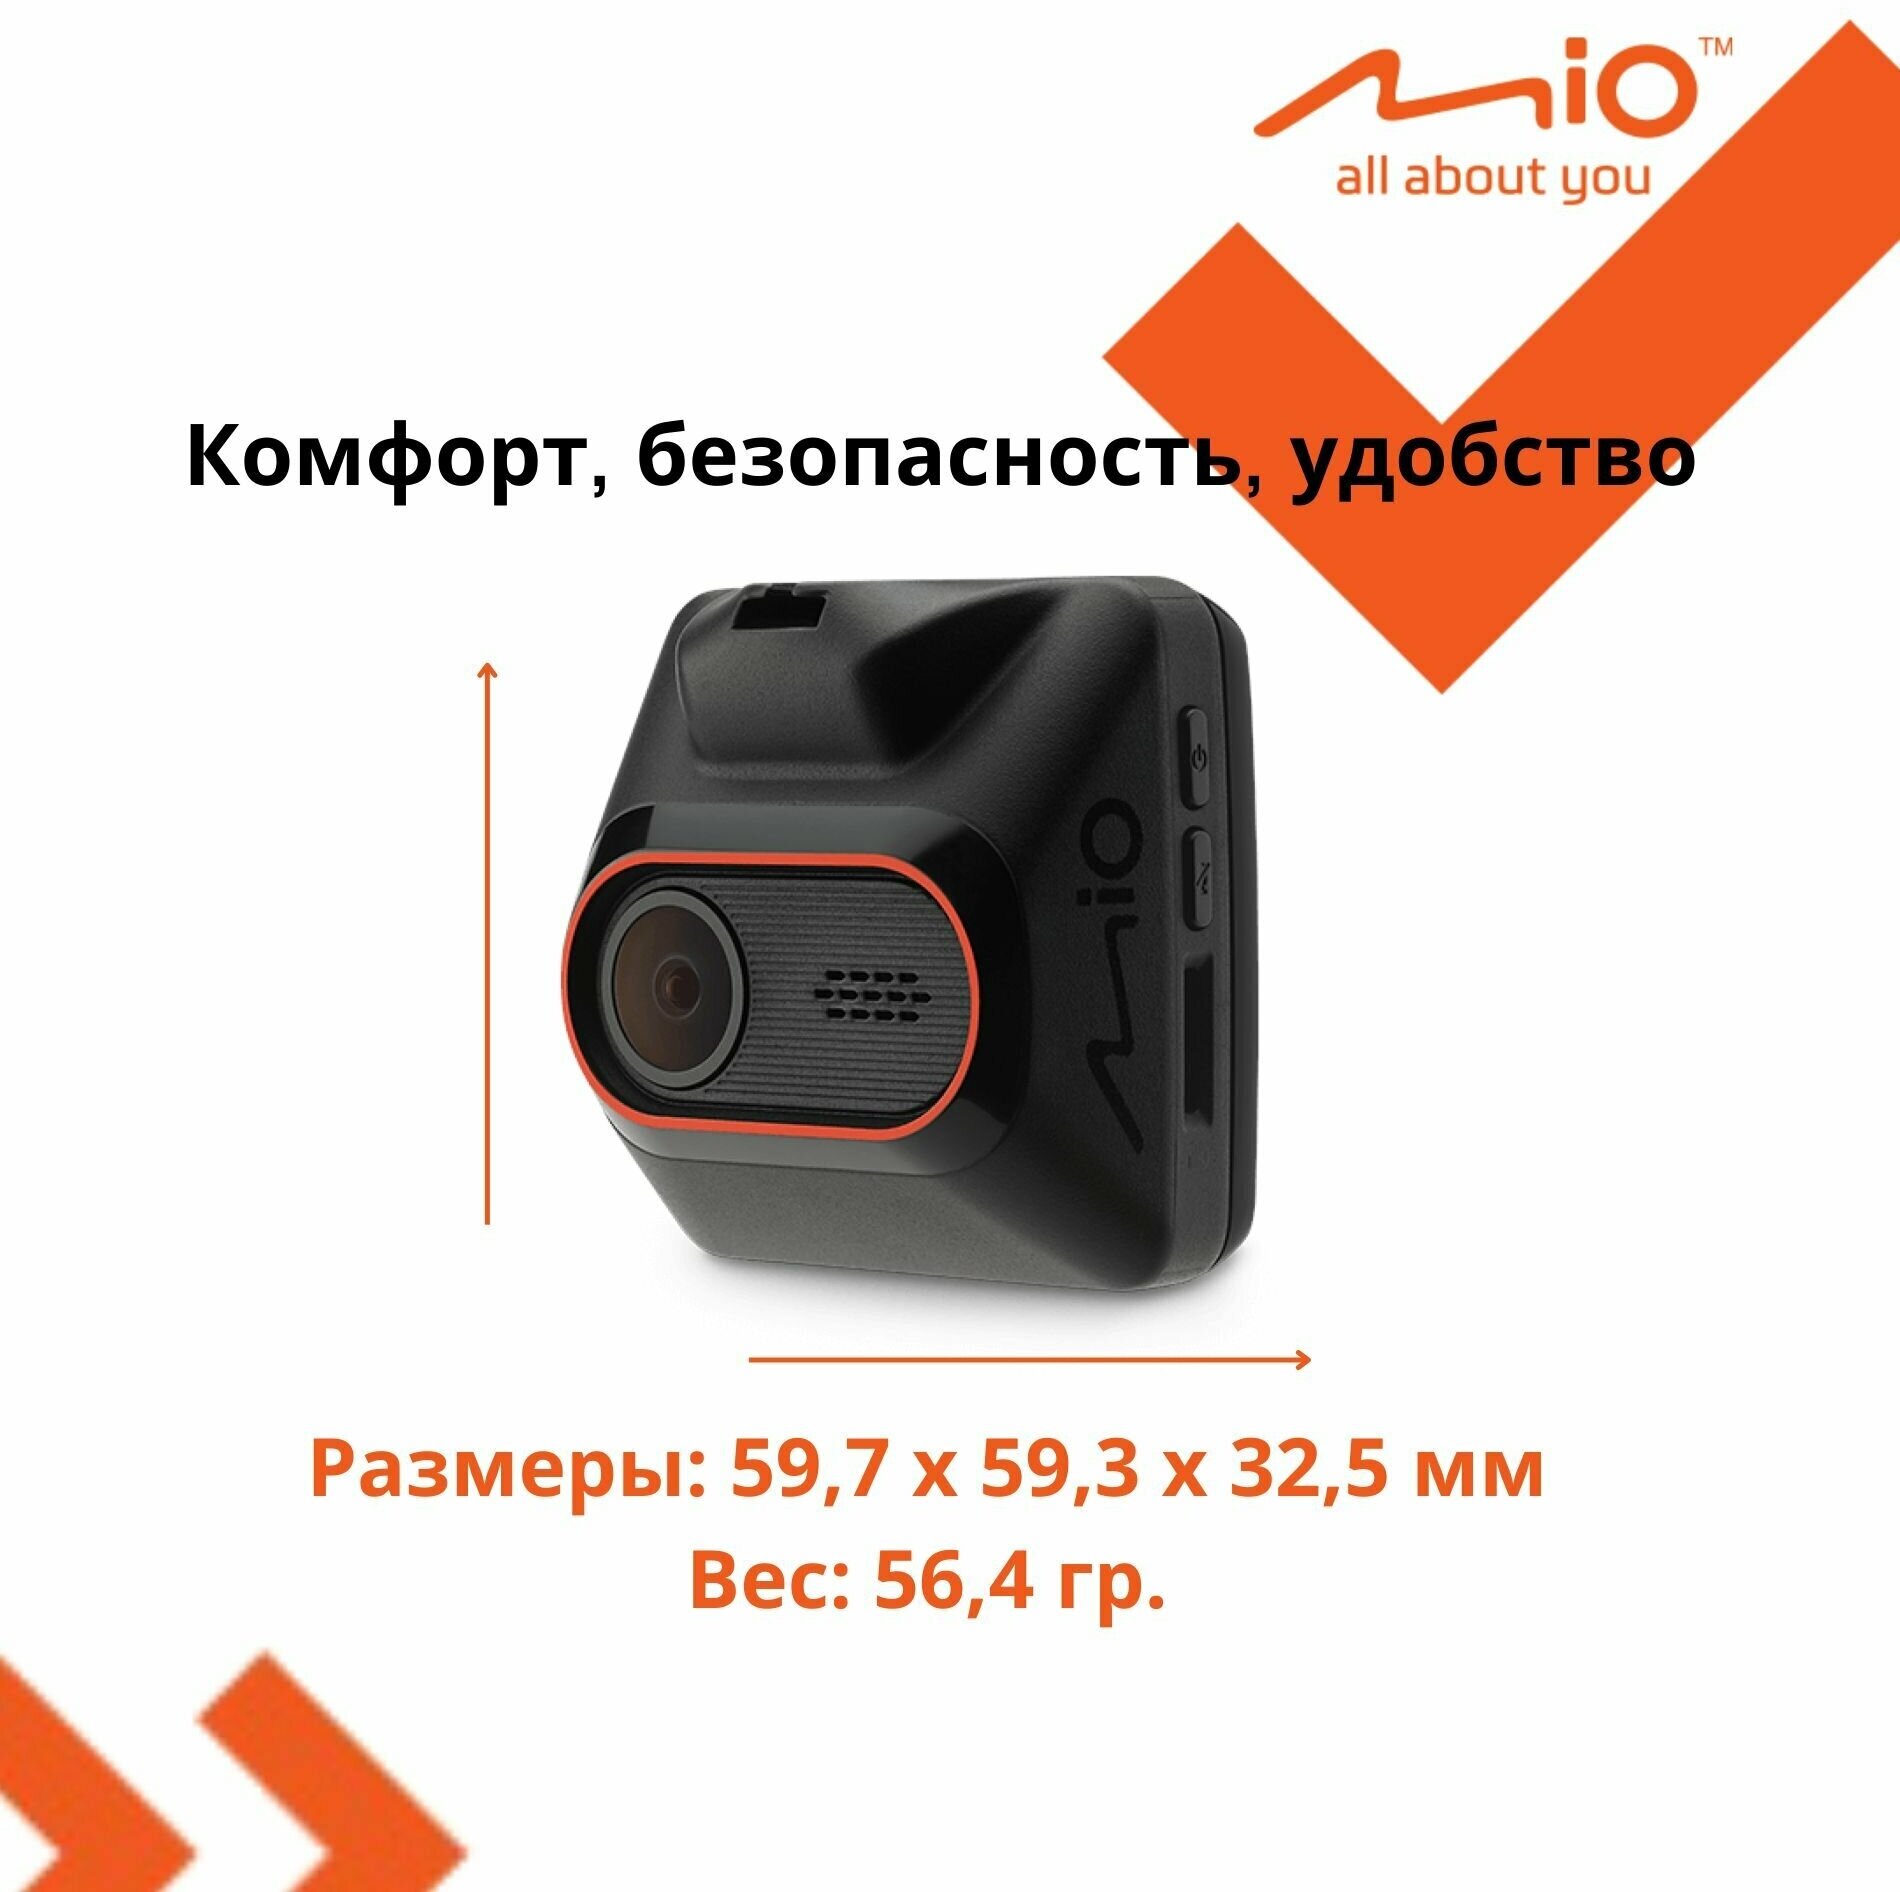 Видеорегистратор автомобильный Mio MiVue C430, с GPS, FullHD, G-sensor, 2.0", предупреждение о камерах